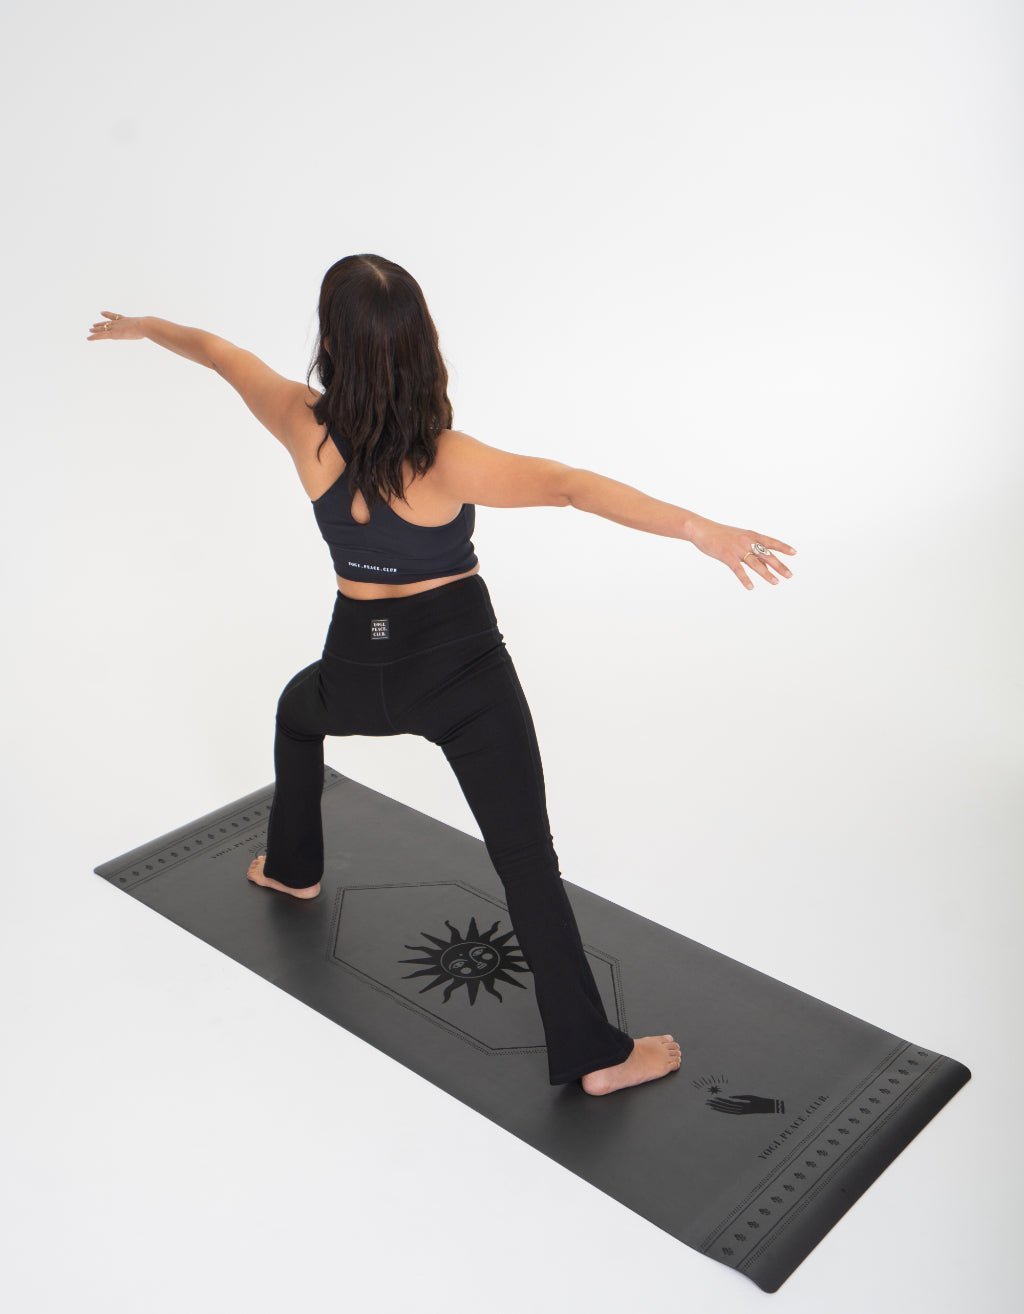 Yoga Pack - Black Deluxe Yoga Mat + Block + Strap + Incense - Yogi Peace Club - YOGA PACK